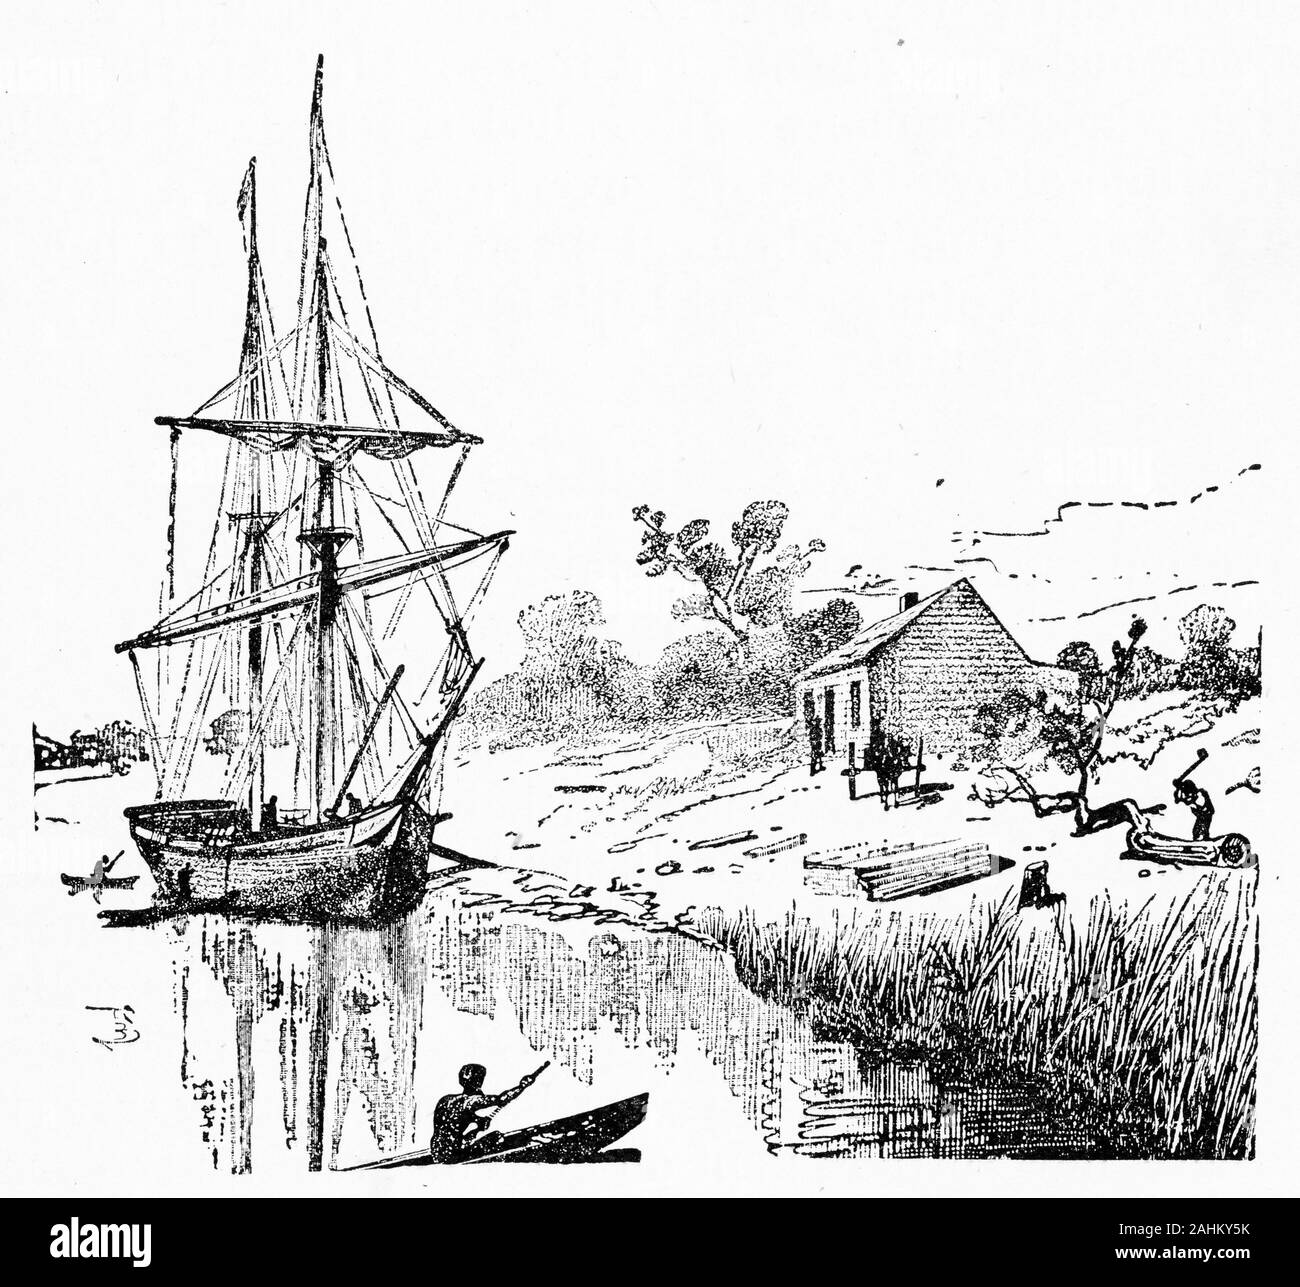 Gravure de l'accueil de la pioneer John Pascoe Fawkner, qui se sont établis sur la rivière Yarra, Melbourne, où s'élève maintenant à Victoria, en Australie. Fawkner (1792 - 1869) a financé une partie de la libre des colons de Van Diemen's Land (maintenant appelé la Tasmanie), de naviguer vers le continent dans son navire, Enterprize en 1835 . Fawkner's party a navigué jusqu'à Port Phillip et le Fleuve Yarra à trouvé un règlement qui devint la ville de Melbourne. Banque D'Images